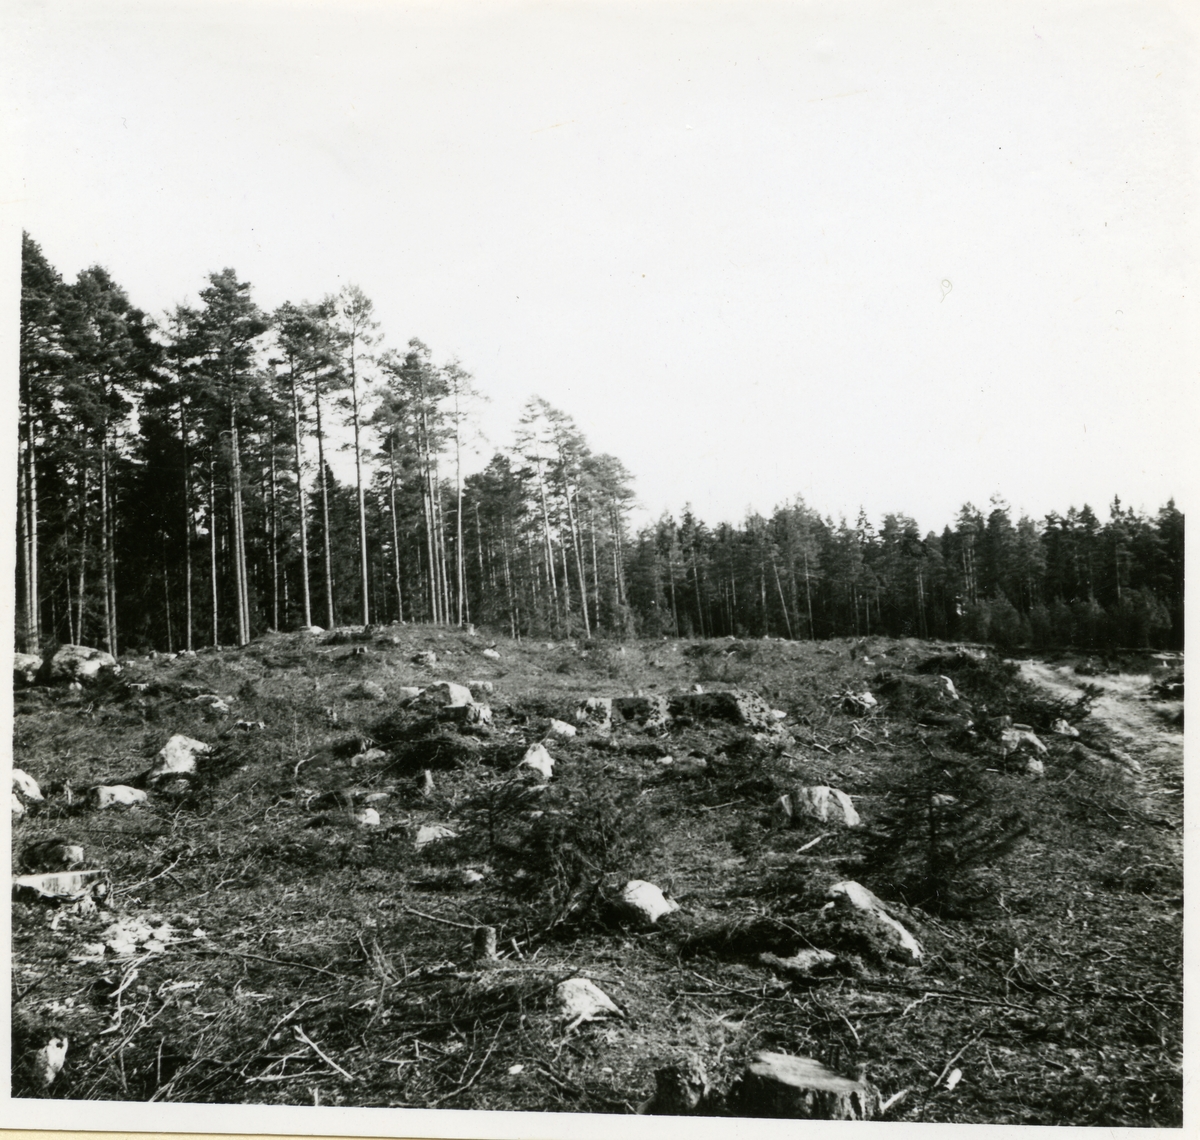 Hubbo sn, Alvesta.
Alvesta 3:1, grav 13 från nordnordväst. 1938.